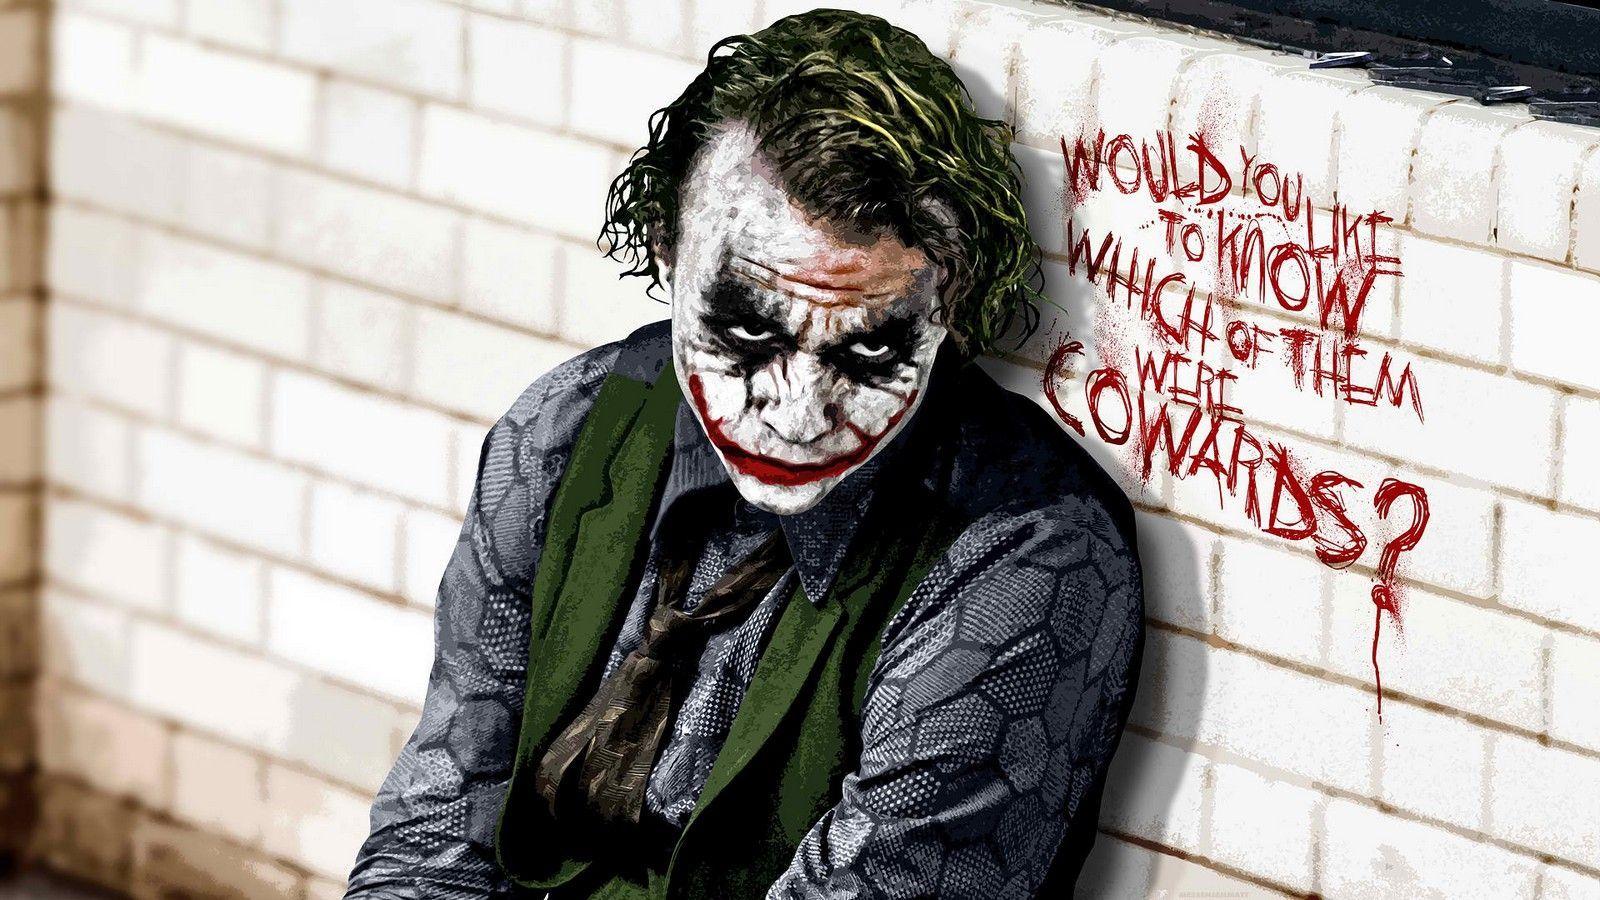 Joker Why So Serious Wallpaper. Joker wallpaper, Joker